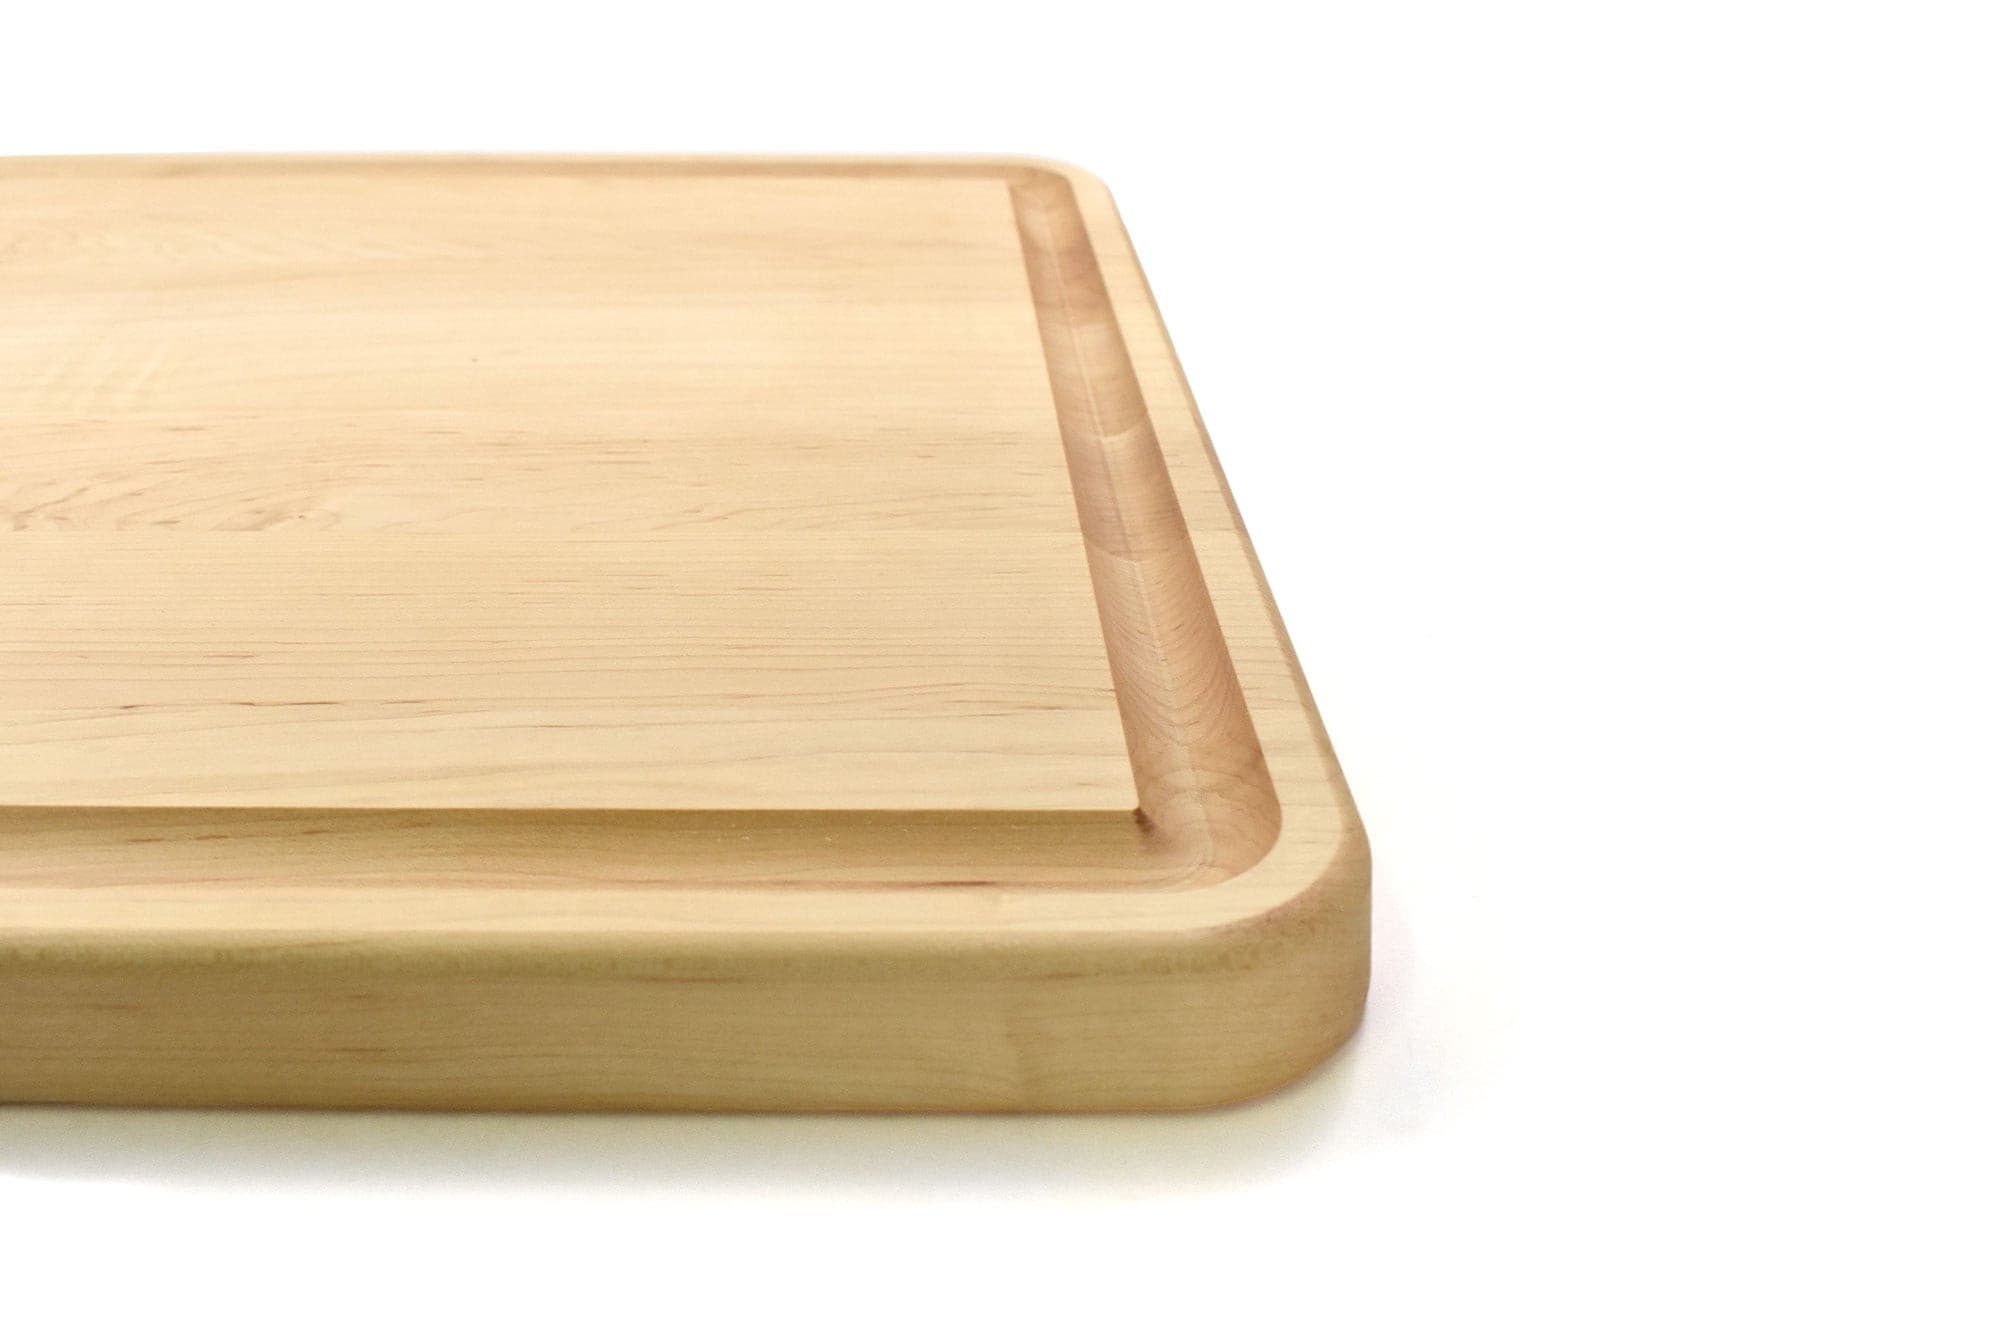 Solid Wood Butcher Block - Your Custom Design.